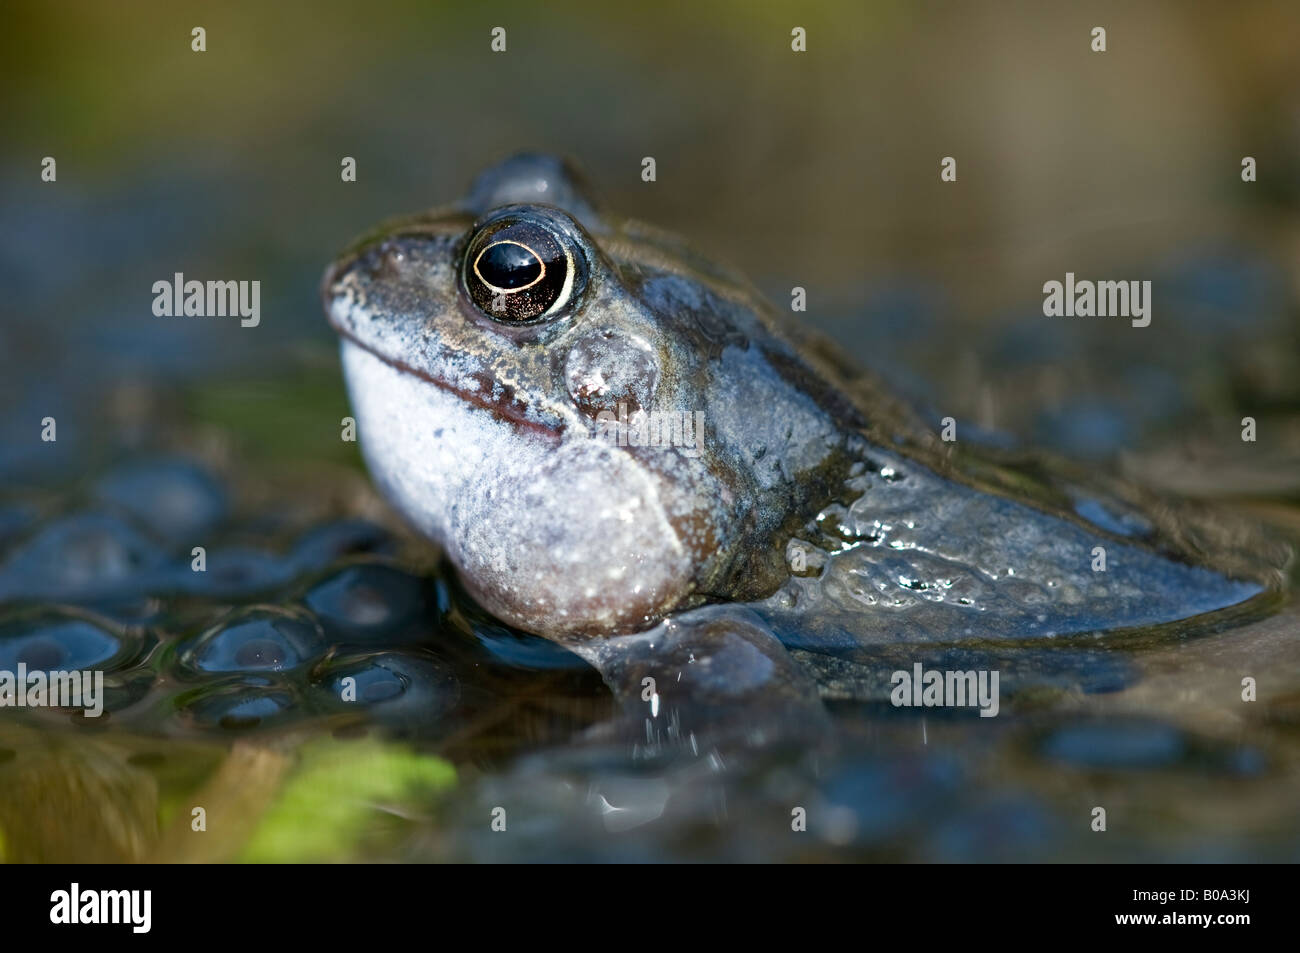 Rana comune (rana temporaria) con frogspawn in un laghetto in giardino. Foto Stock